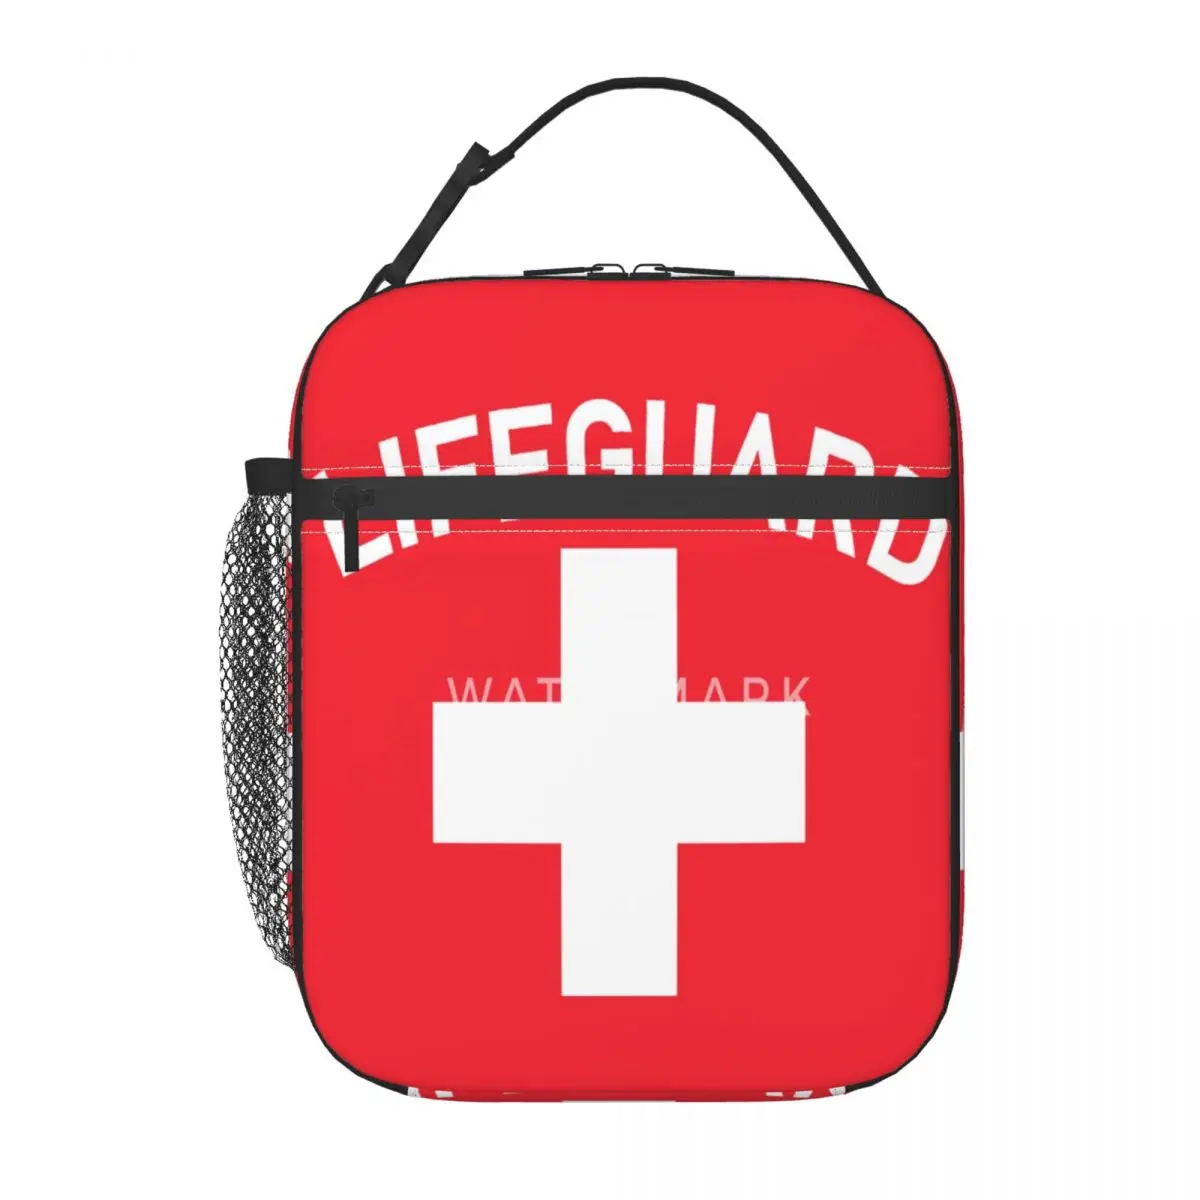 

Emp-lifeguard-design-na изолированная сумка для обеда, популярный прочный подарок на день рождения, несколько стилей